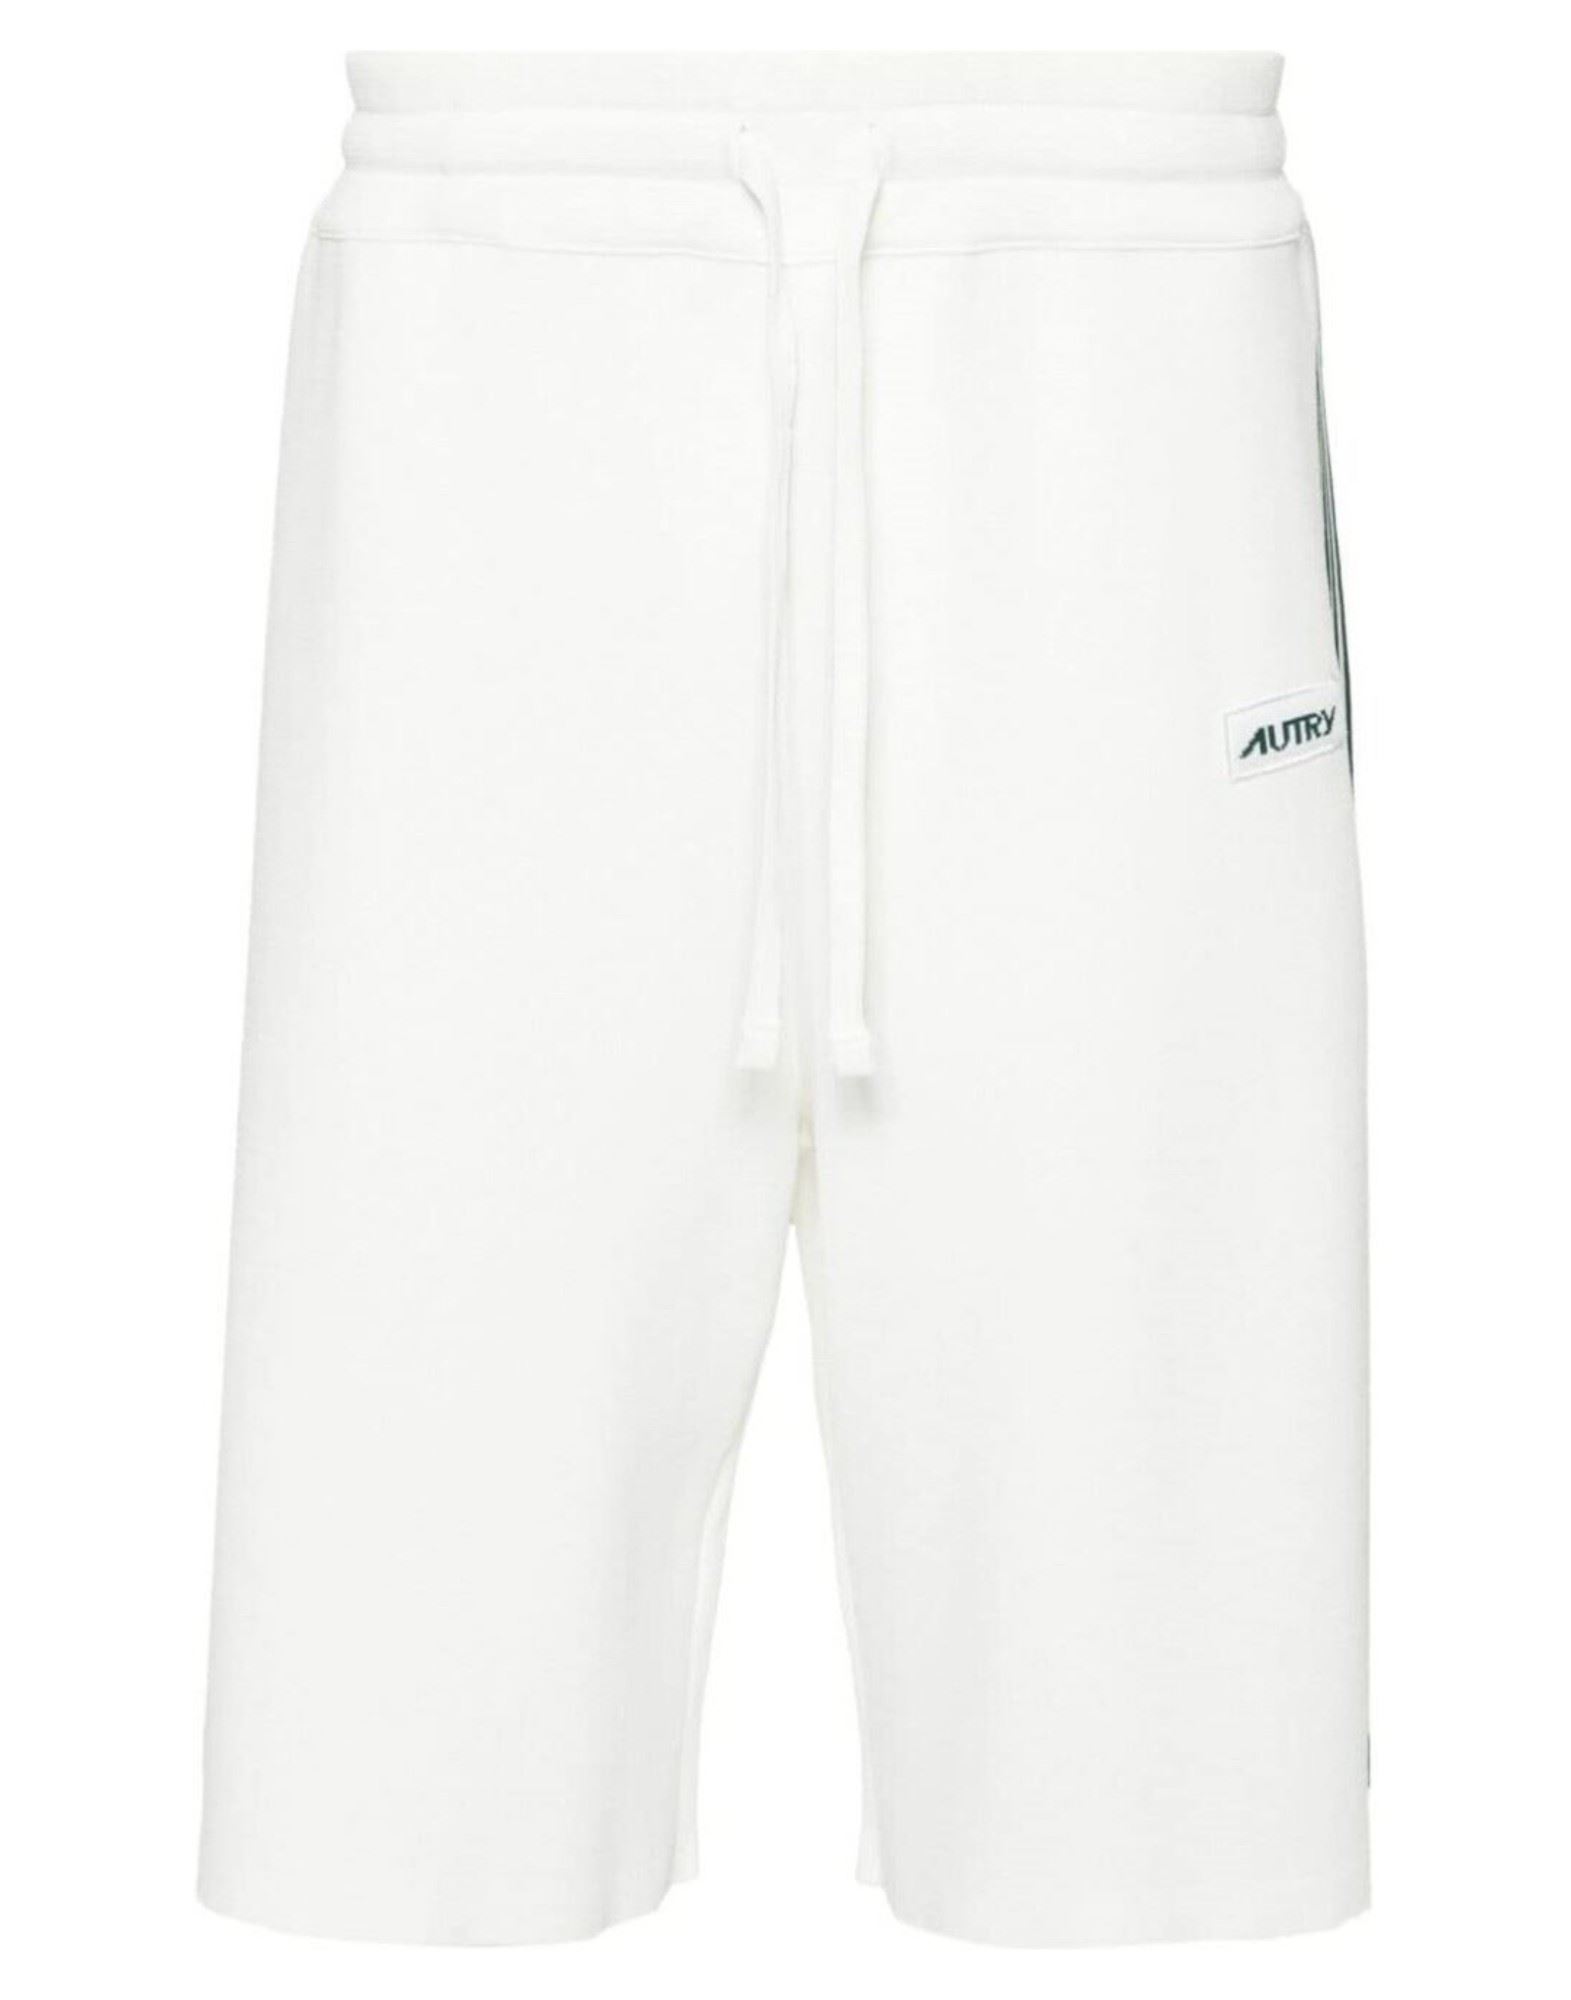 AUTRY Shorts & Bermudashorts Herren Weiß von AUTRY